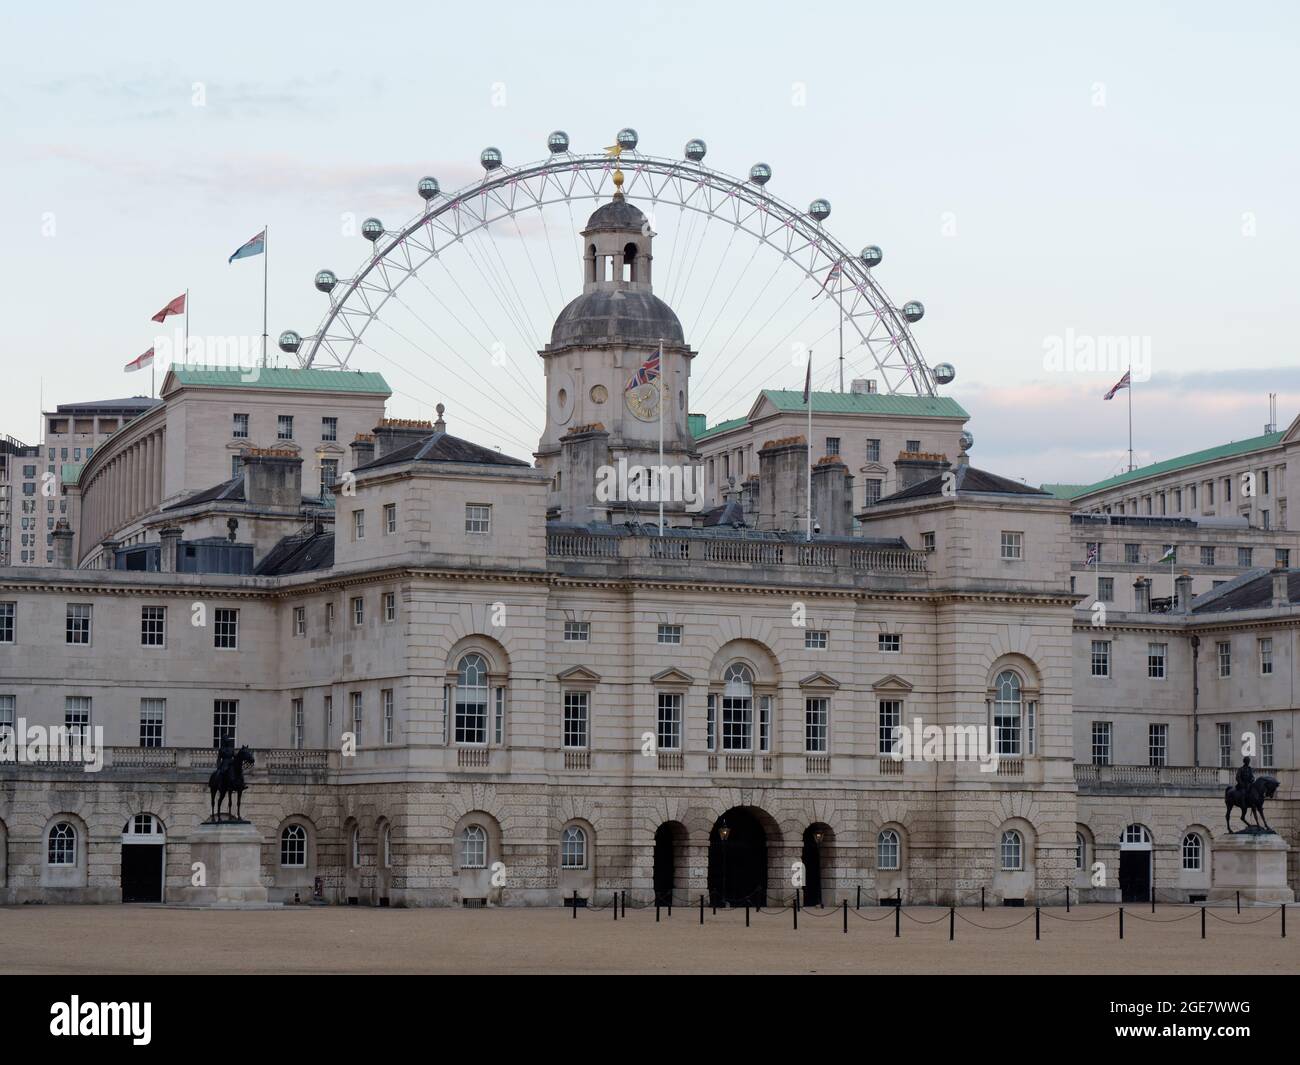 Londres, Grand Londres, Angleterre, août 10 2021 : parade des gardes à cheval avec le London Eye. Banque D'Images